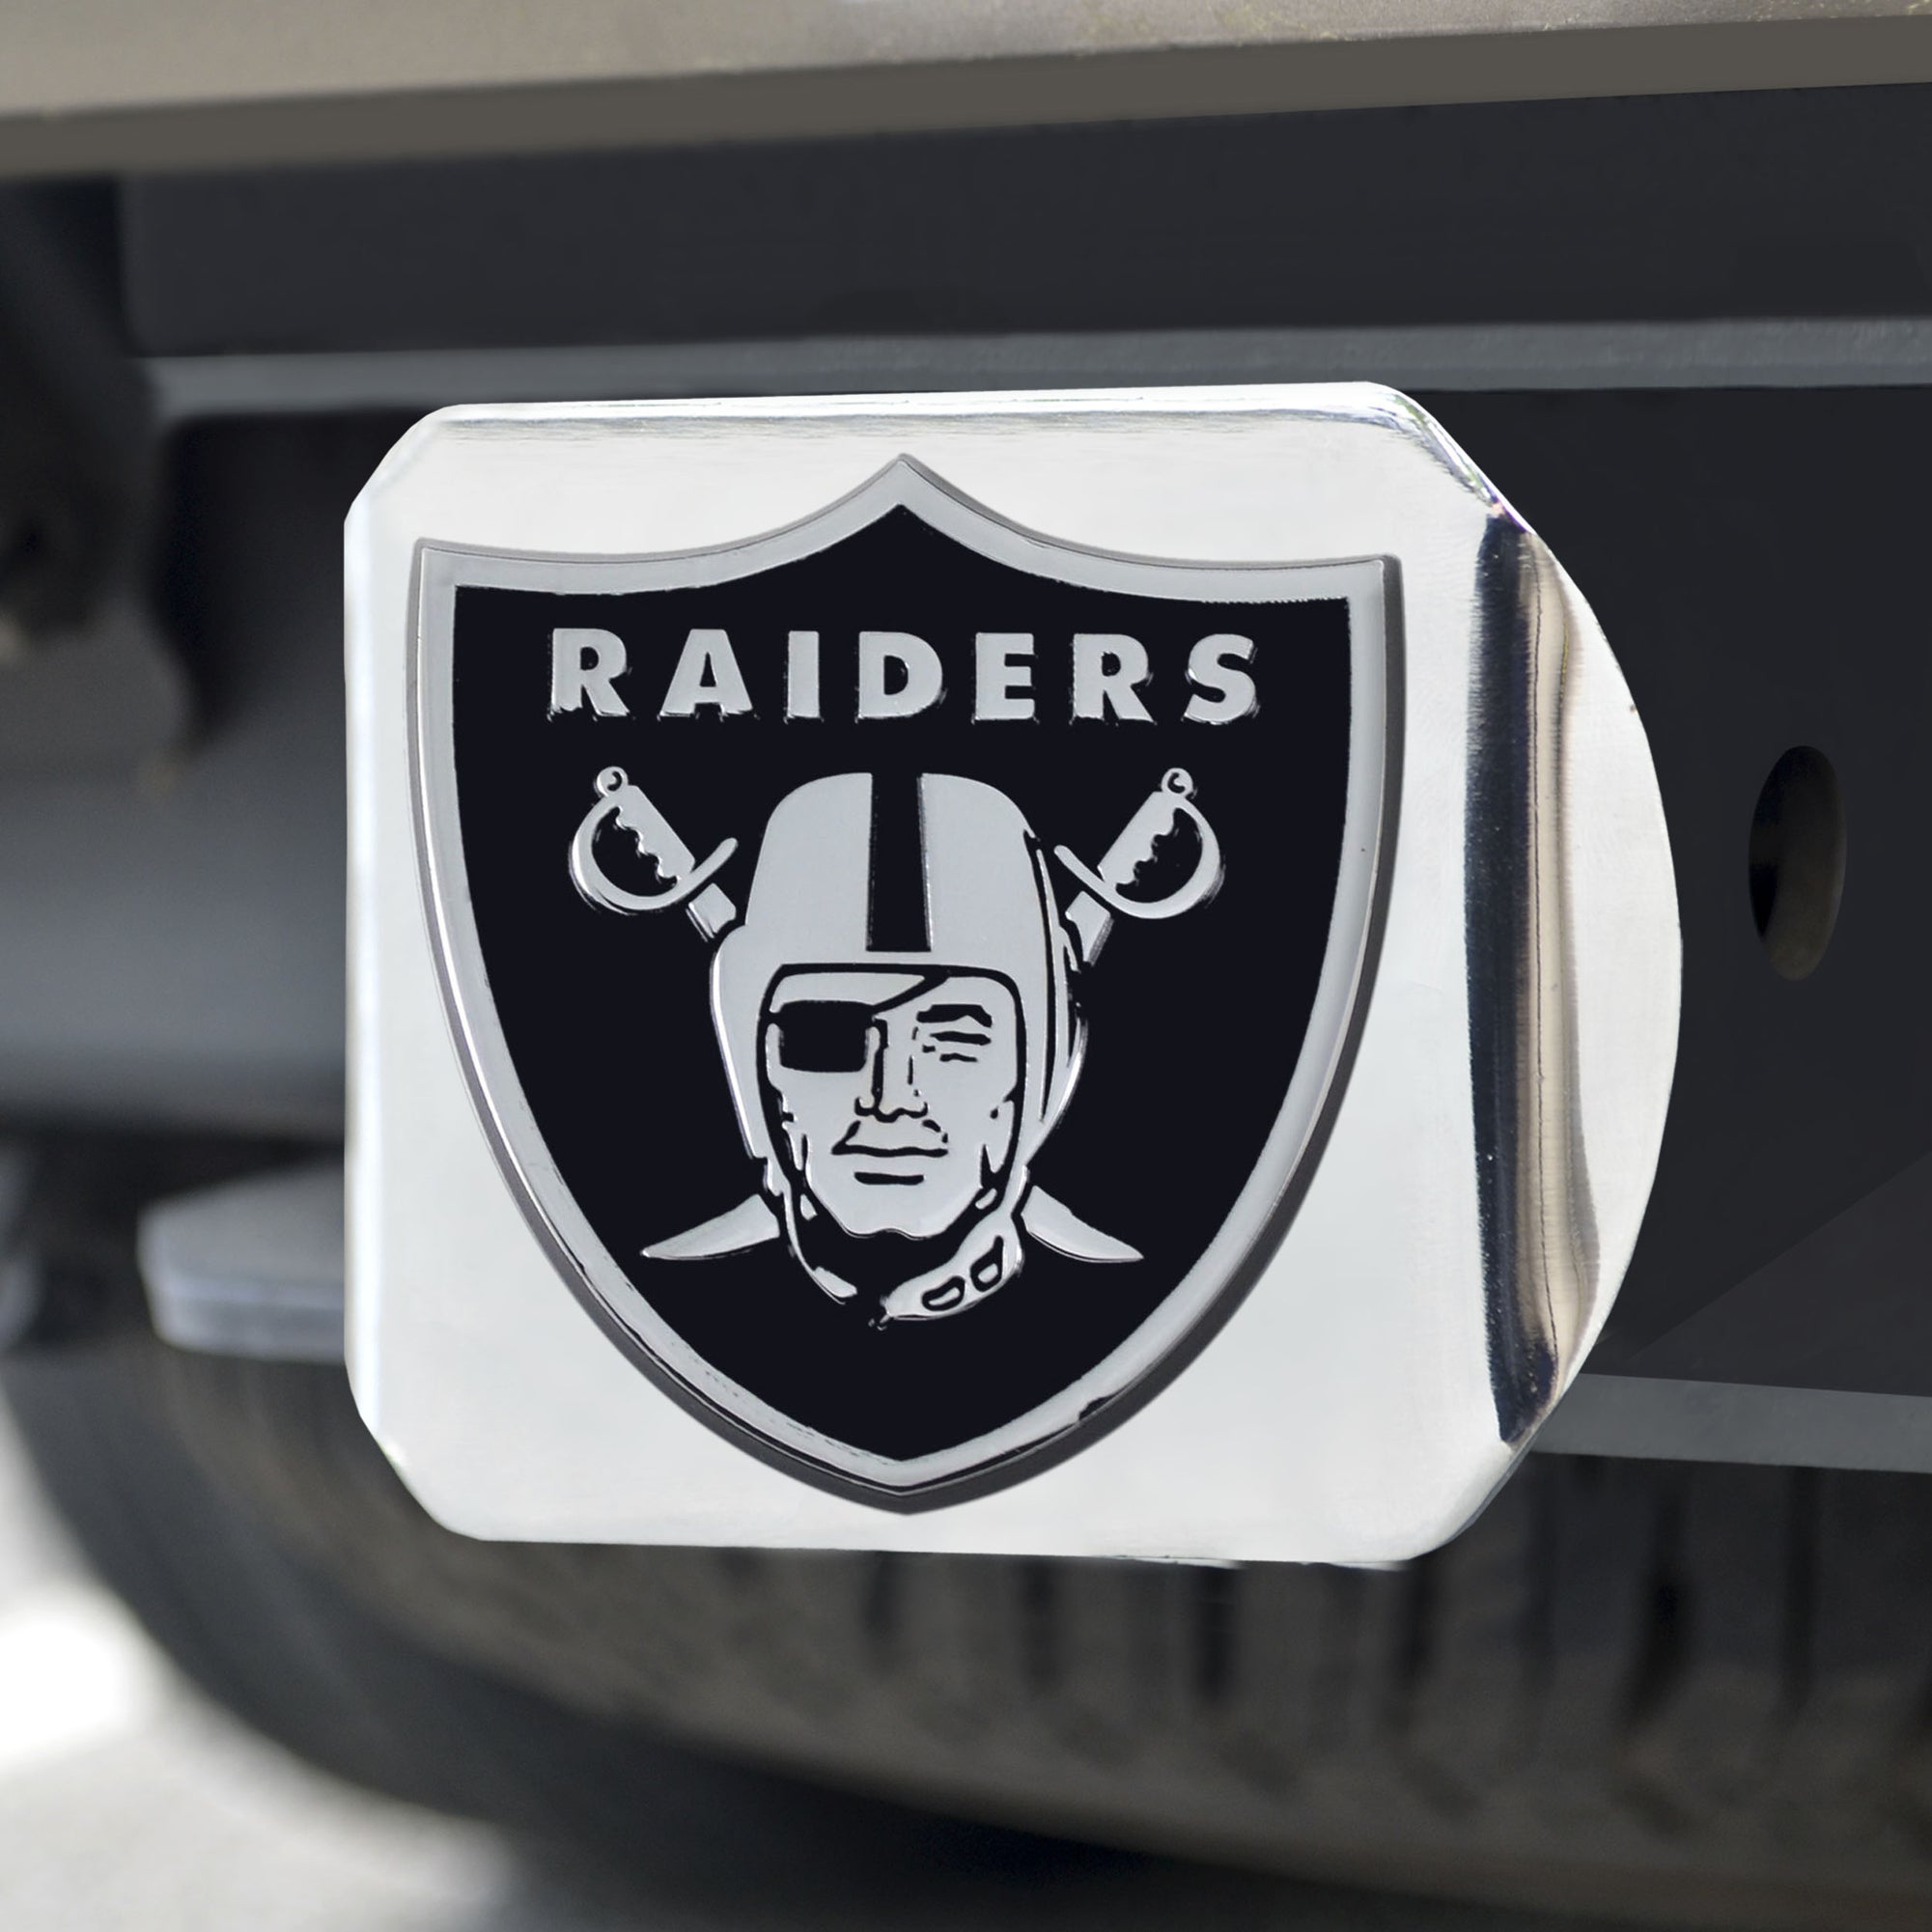 Las Vegas Raiders Auto Accessories in Las Vegas Raiders Team Shop